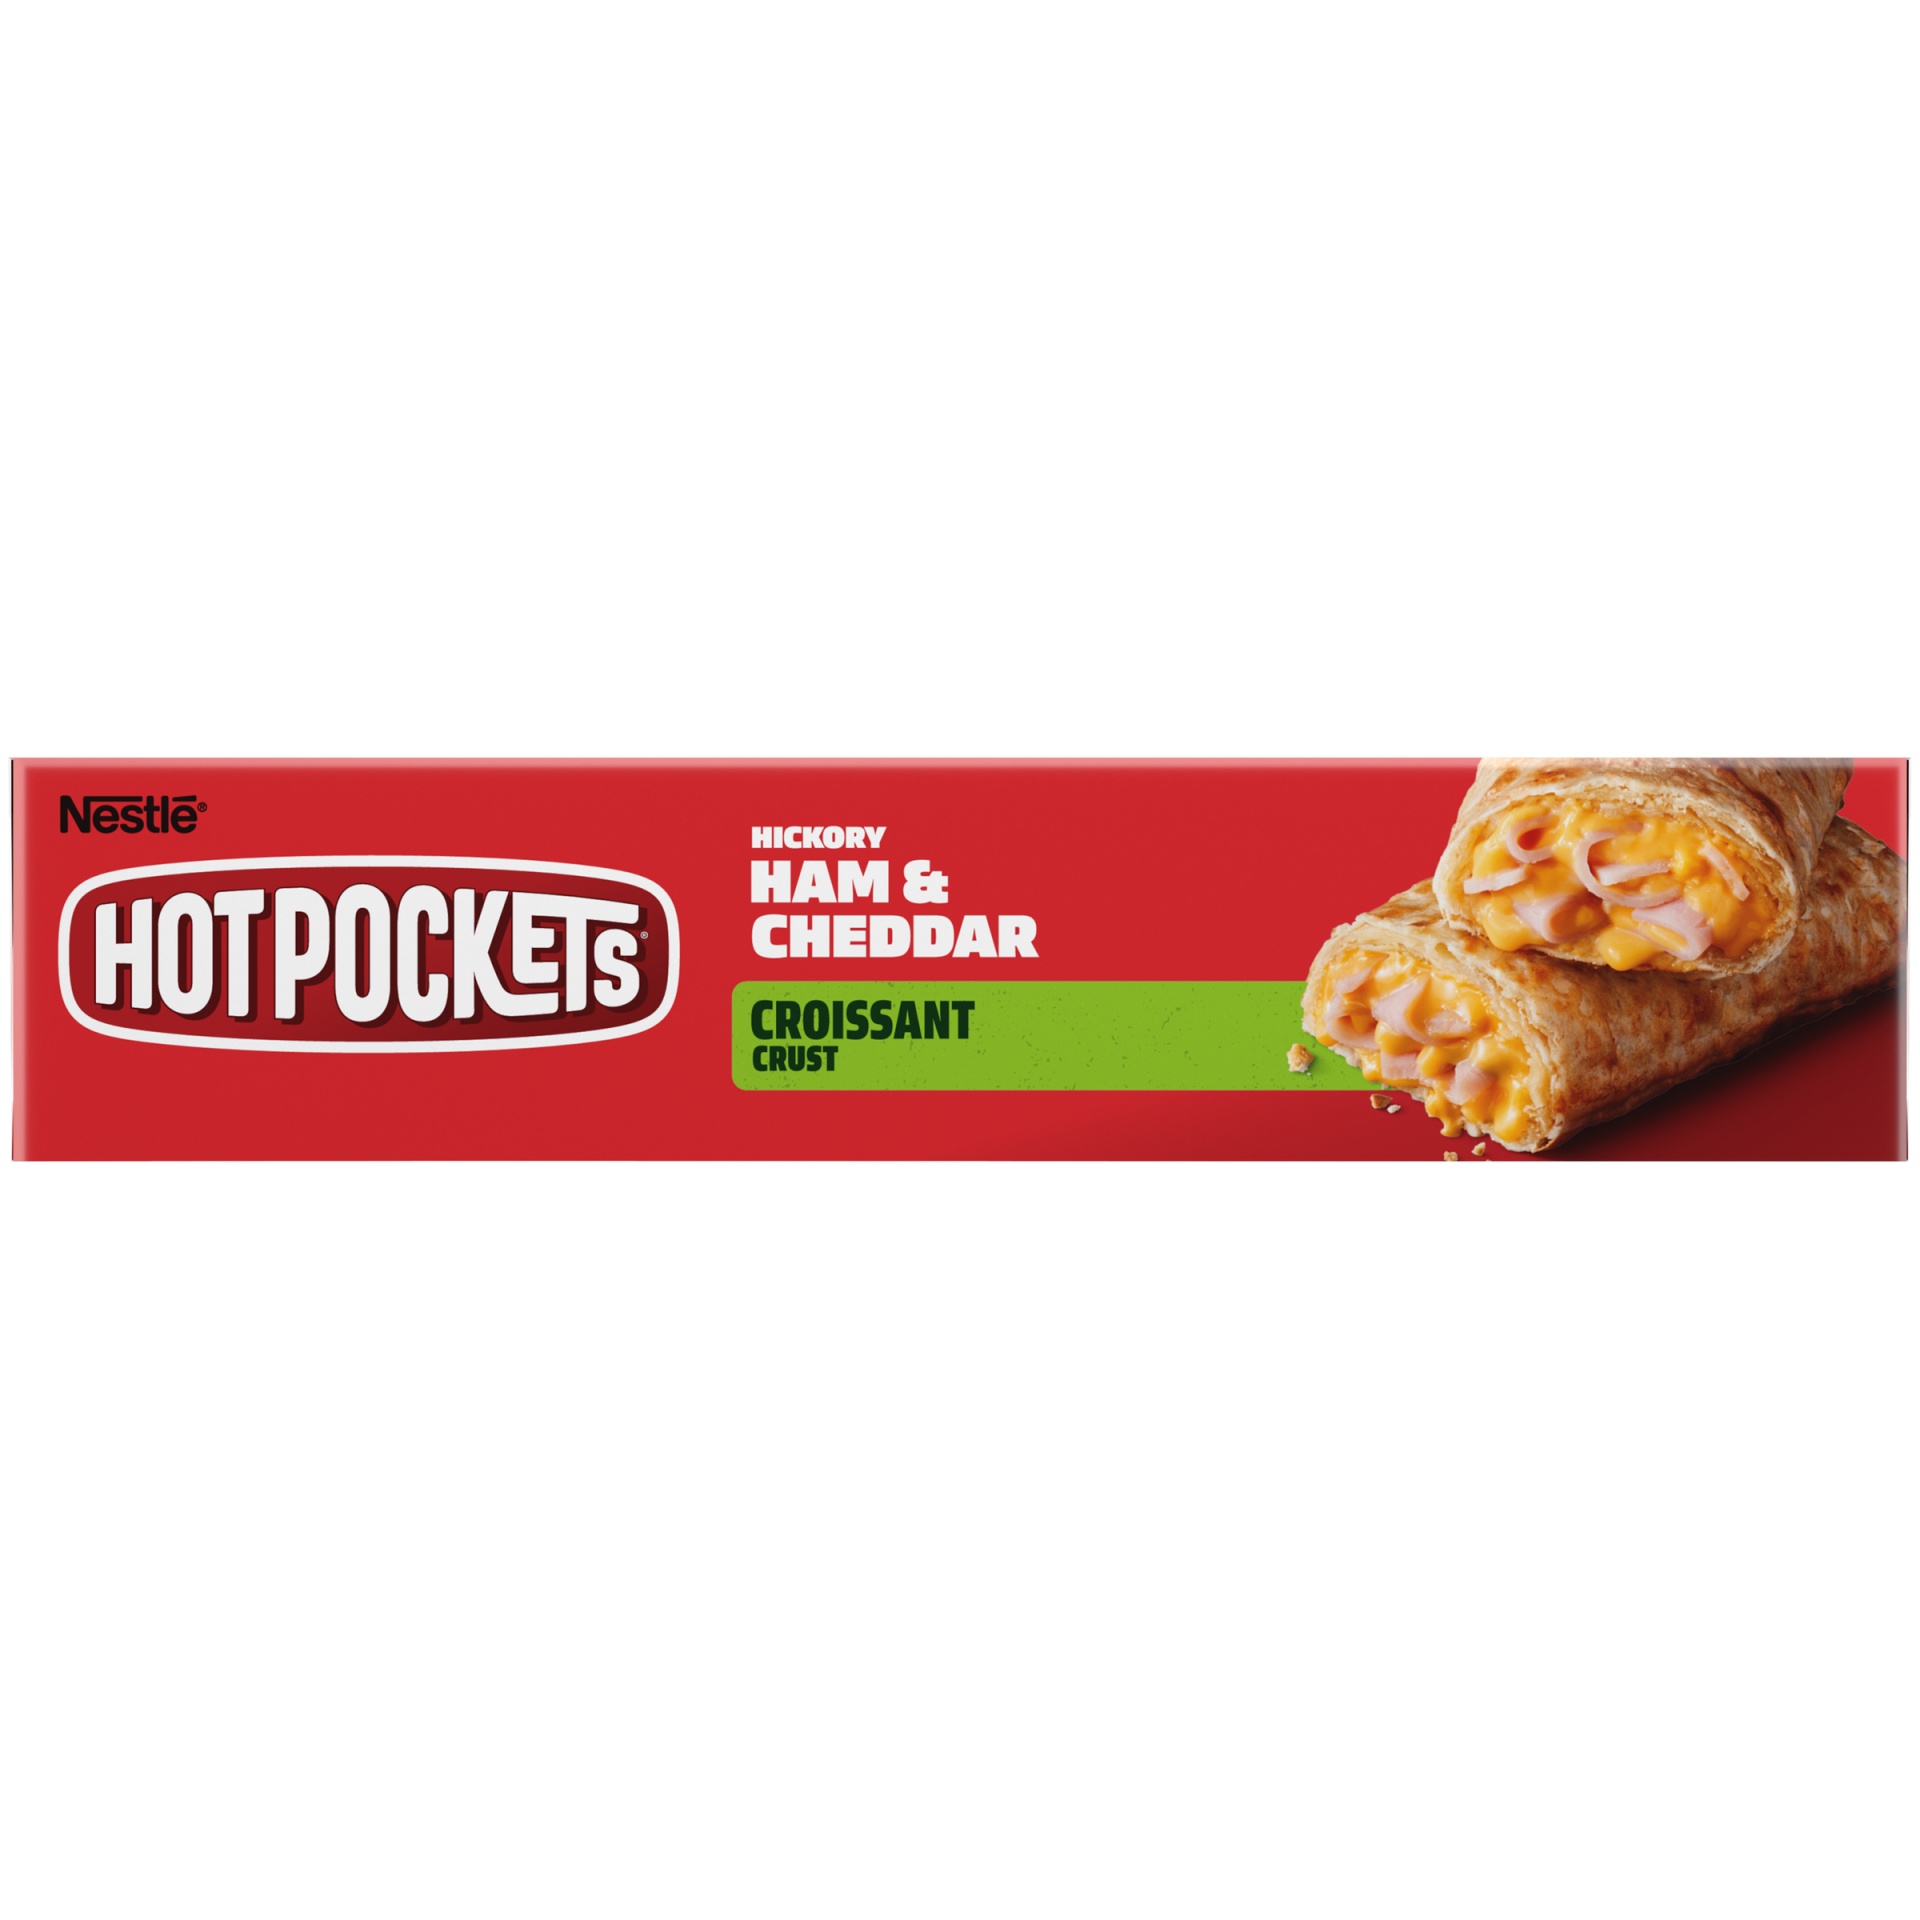 slide 7 of 10, Hot Pockets Hickory Ham & Cheddar Croissant Crust Frozen Snacks, 9 oz